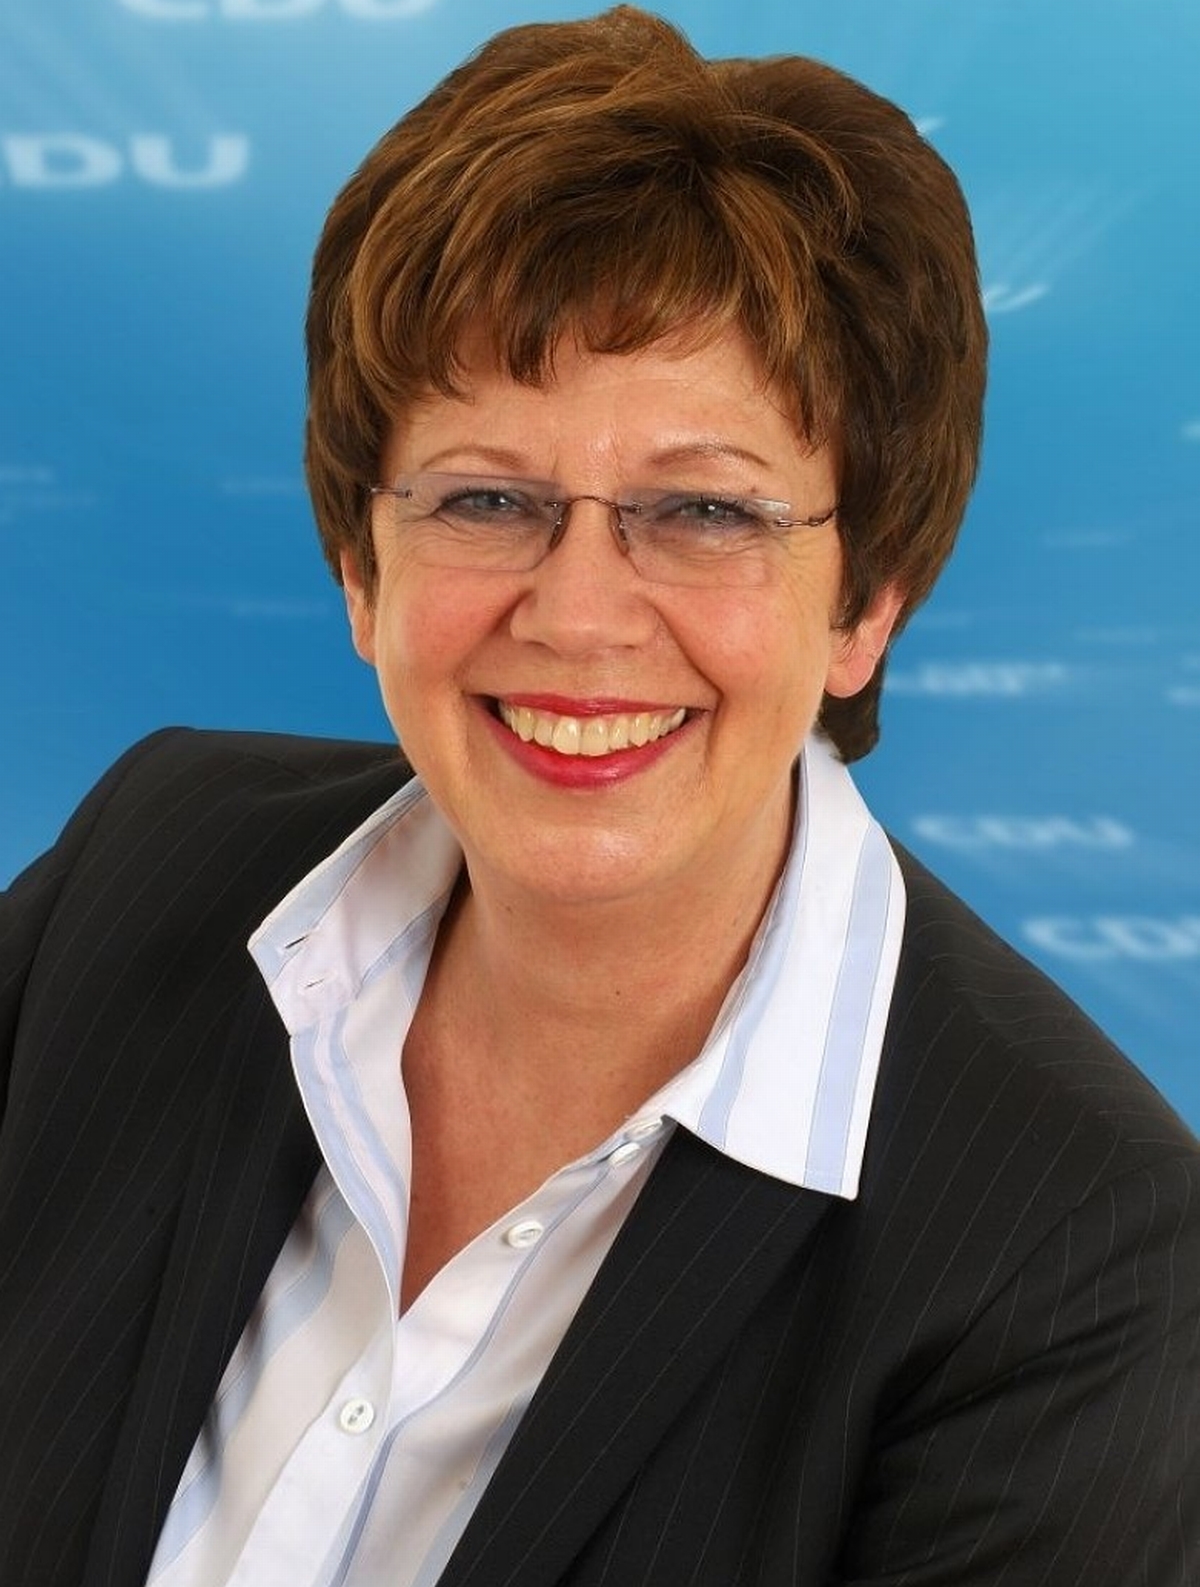 Anne Holt - minister sprawiedliwości pisze świetne kryminały